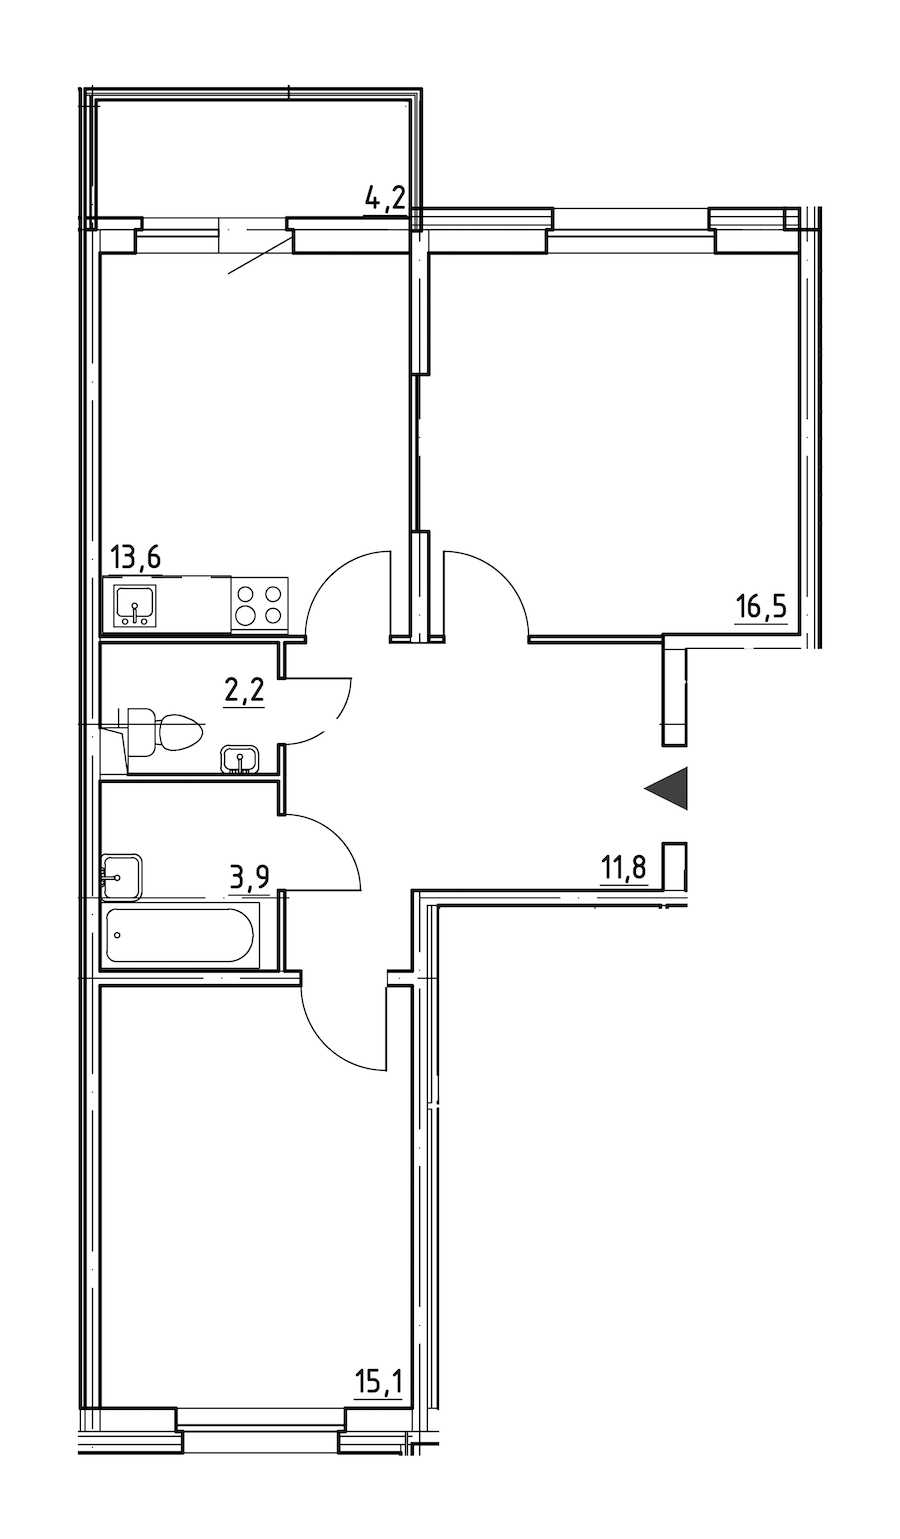 Двухкомнатная квартира в : площадь 64.4 м2 , этаж: 1 – купить в Санкт-Петербурге